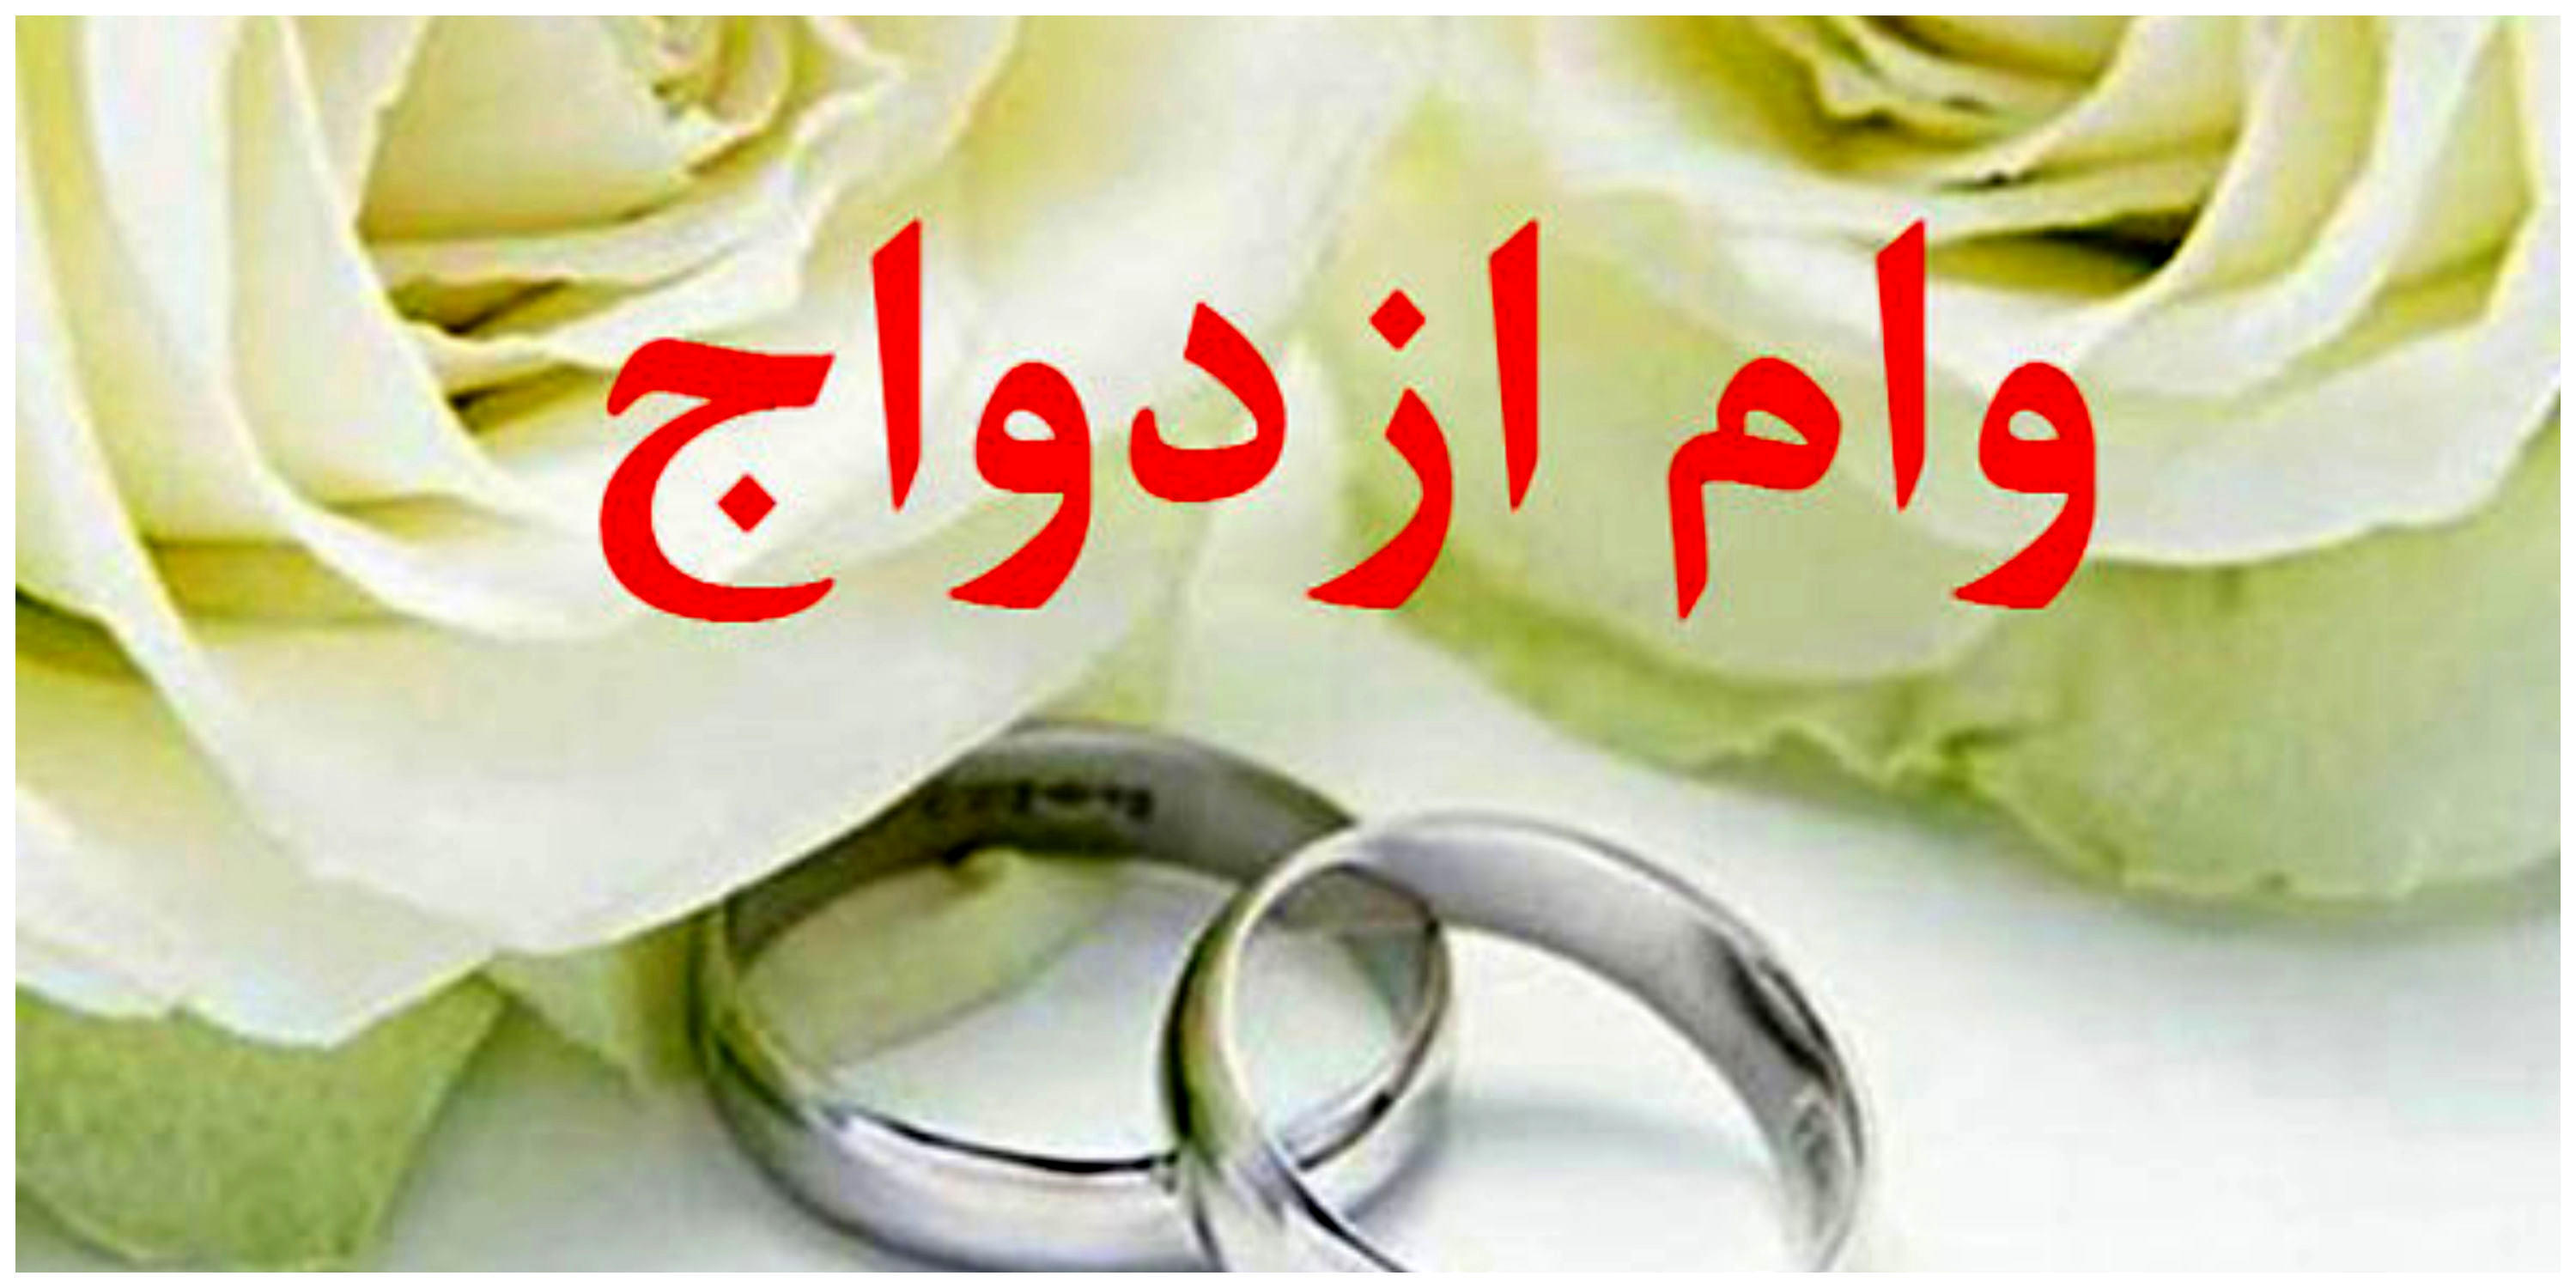 اقدامات مهم دولت برای سهولت پرداخت وام ازدواج

